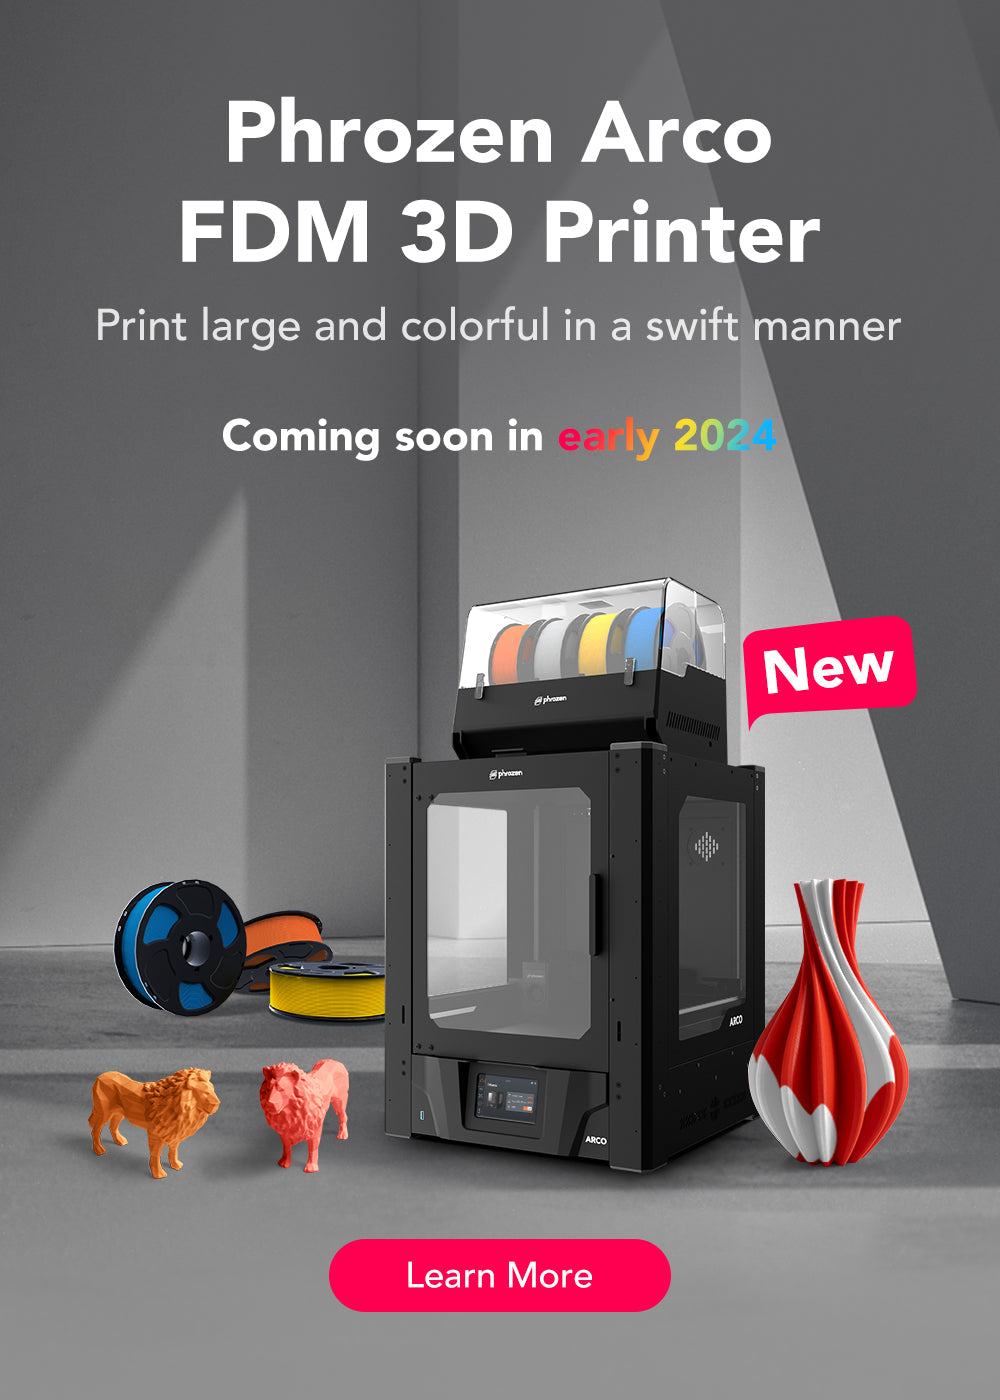 Phrozen LCD Frame Tape  Phrozen Technology: Resin 3D Printer Manufacturer